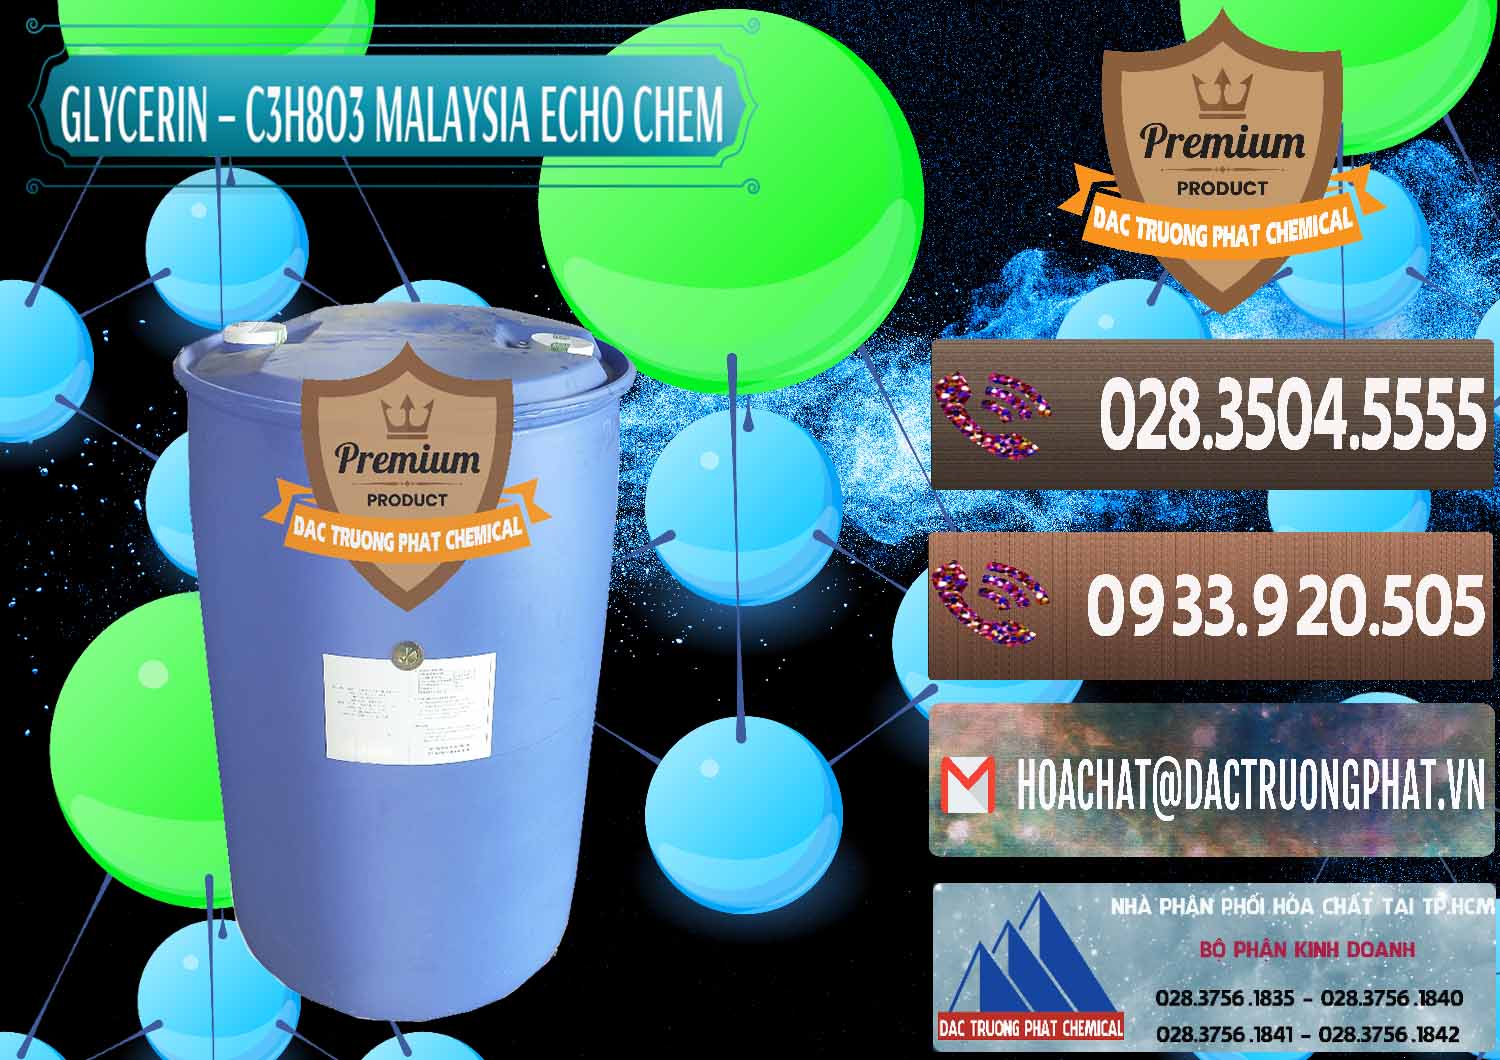 Nơi chuyên bán ( cung ứng ) Glycerin – C3H8O3 99.7% Echo Chem Malaysia - 0273 - Đơn vị chuyên kinh doanh - cung cấp hóa chất tại TP.HCM - hoachatviet.net